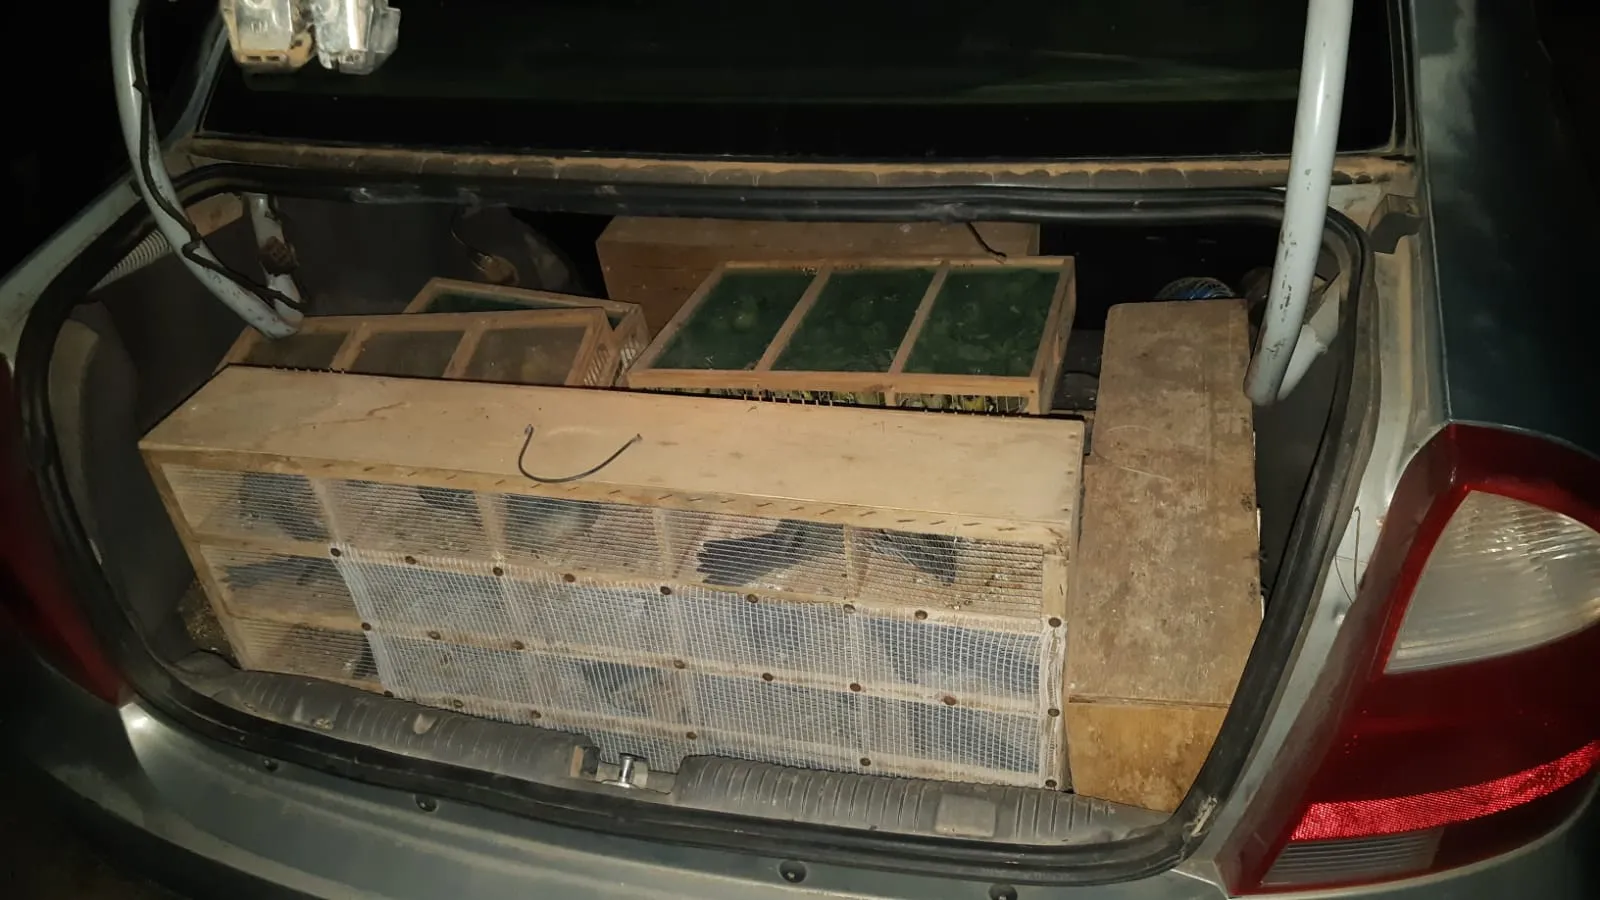 Foram encontradas 504 aves silvestre no porta-mala do Corsa Sedan